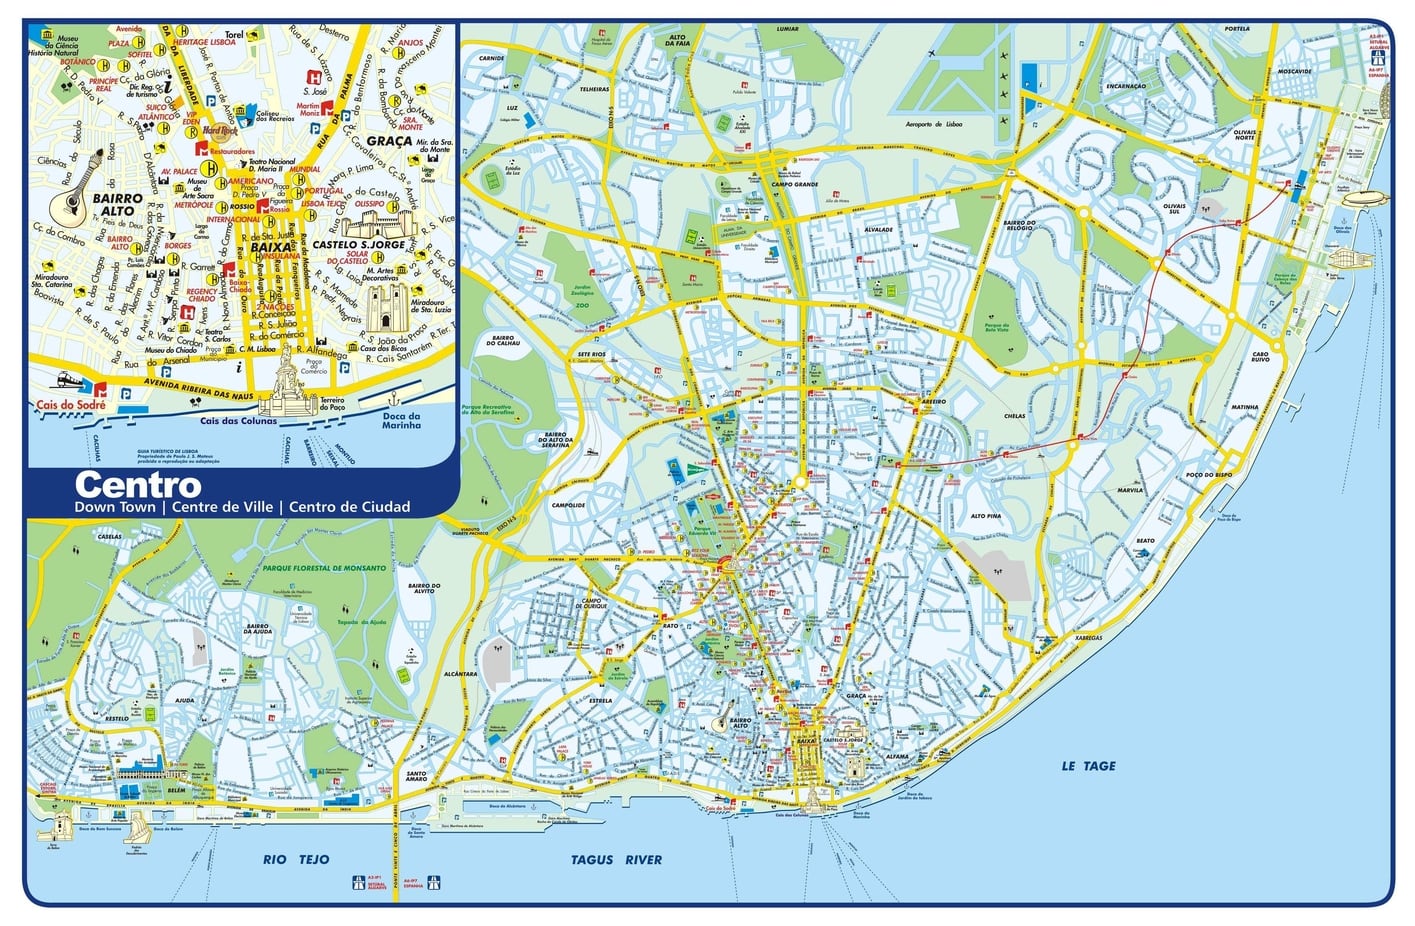 Mapa de Lisboa con máxima resolución